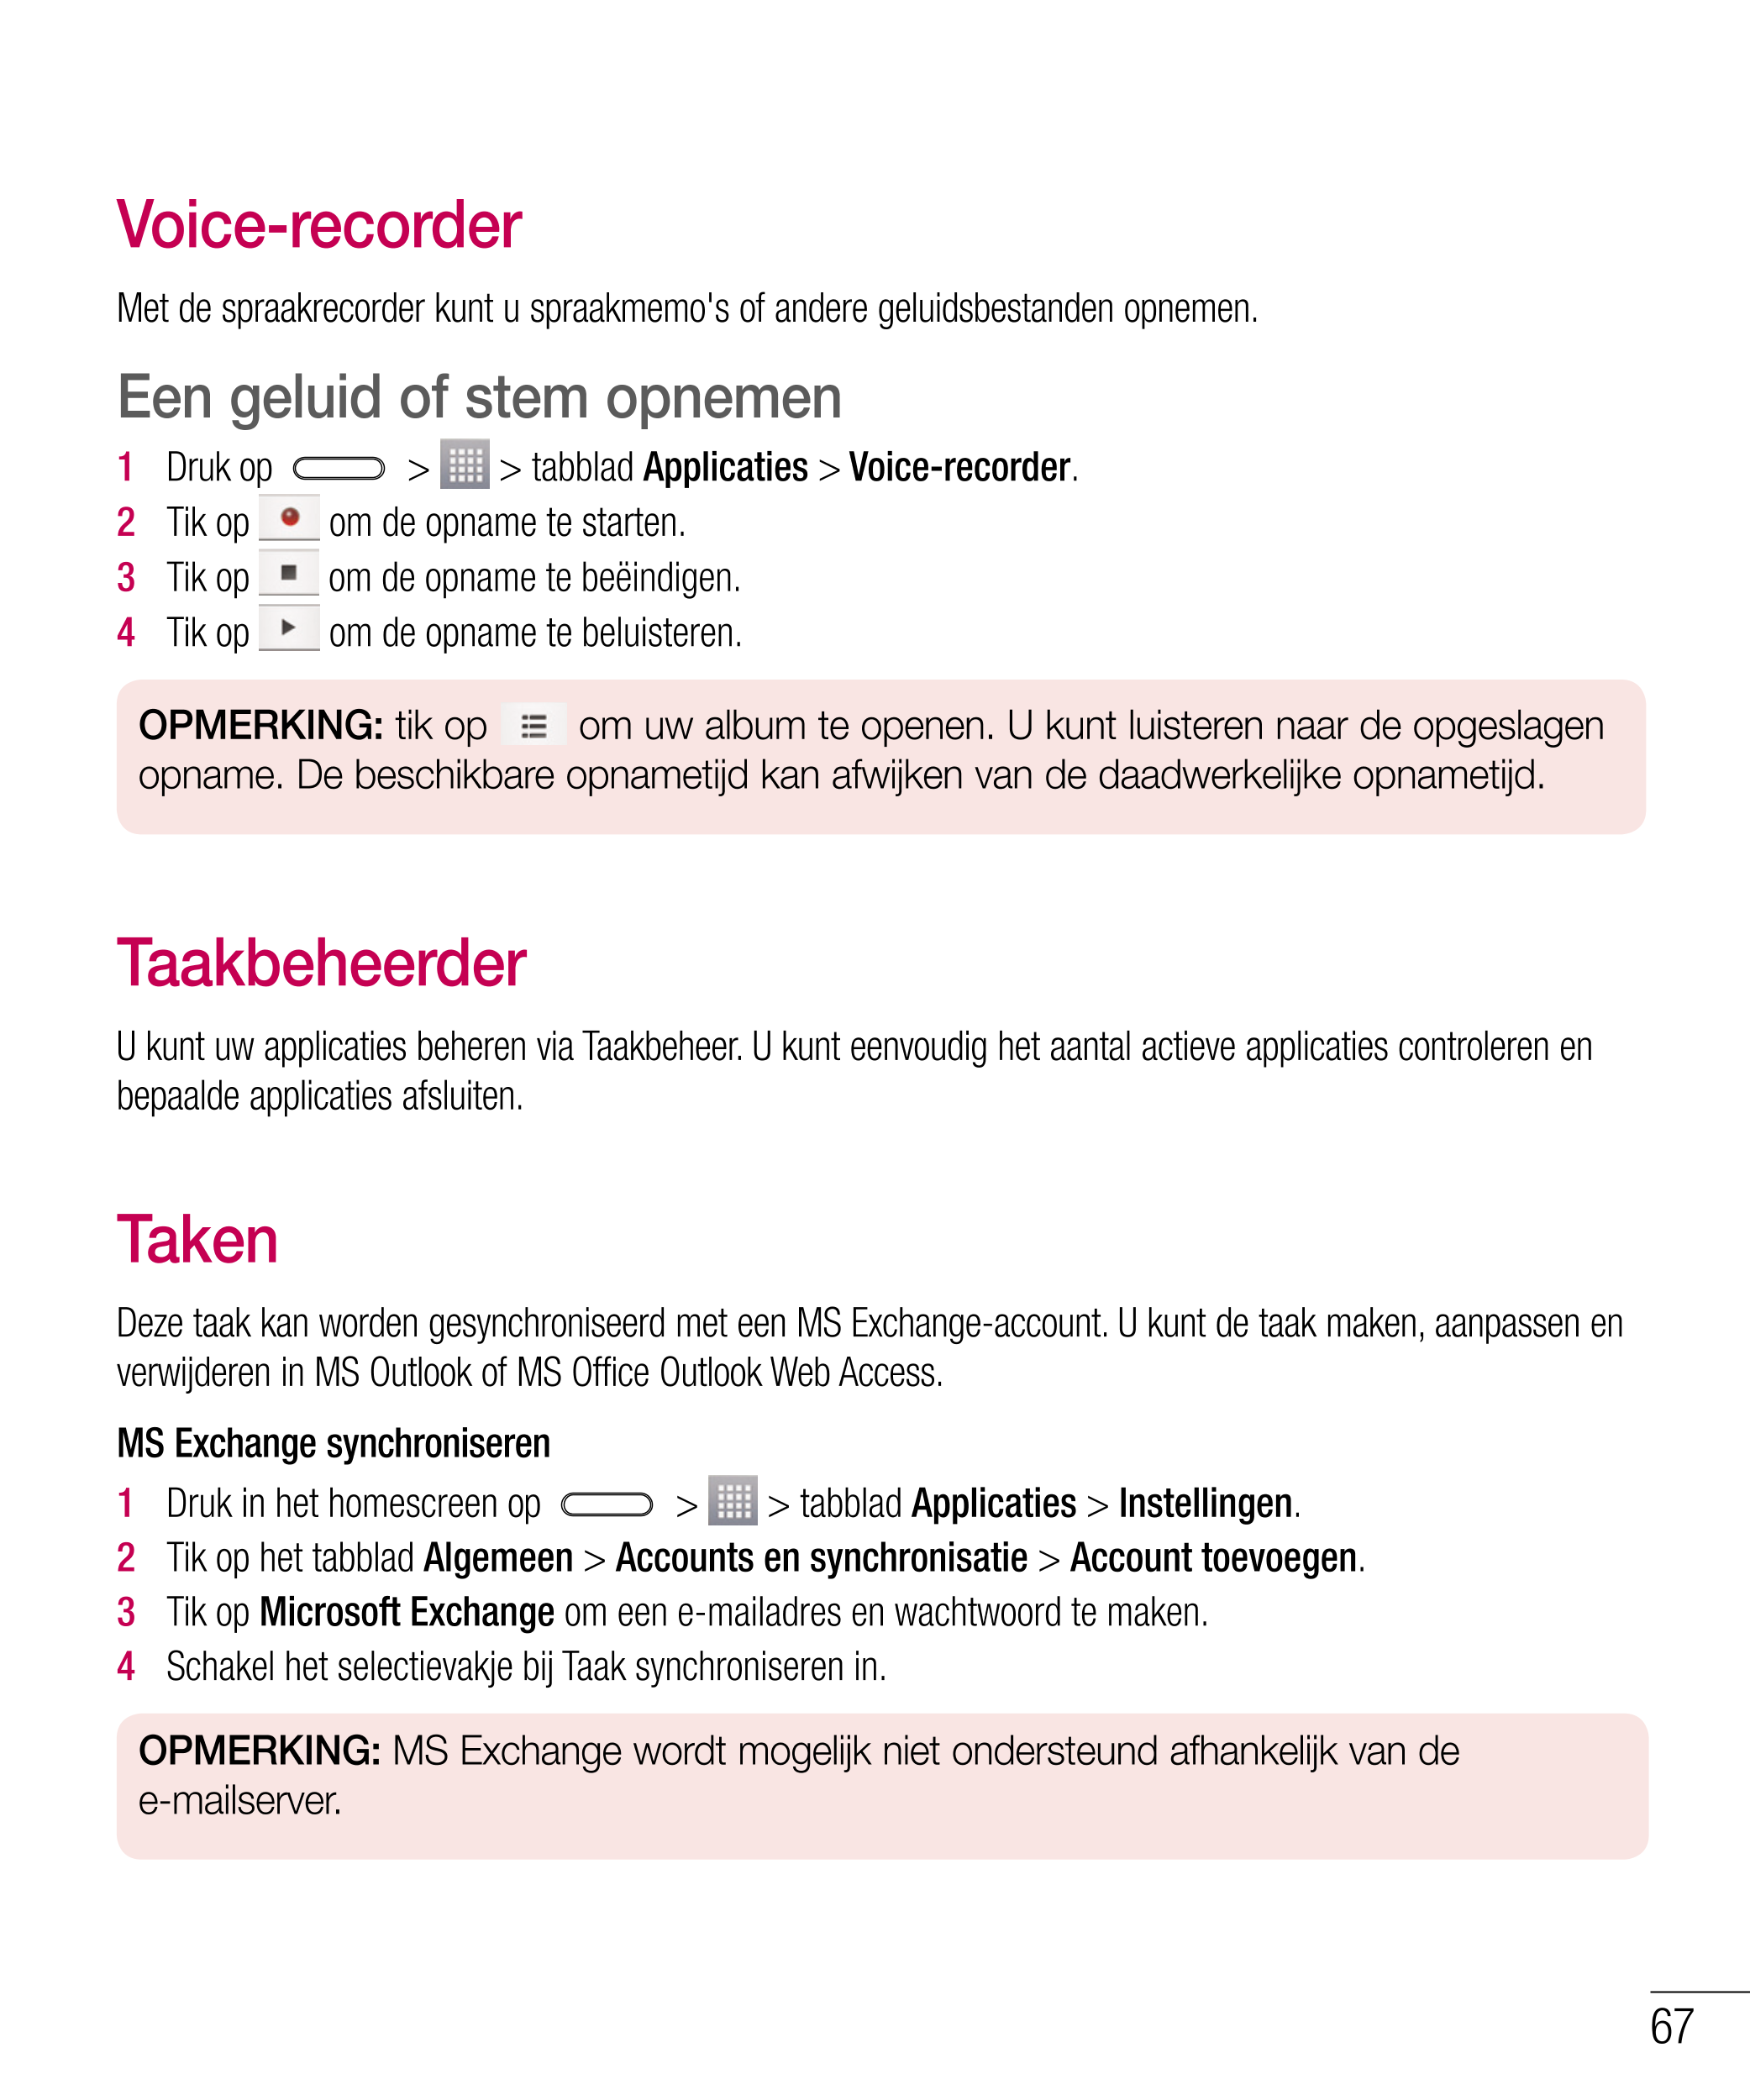 Voice-recorder
Met de spraakrecorder kunt u spraakmemo's of andere geluidsbestanden opnemen.
Een geluid of stem opnemen
1   Druk